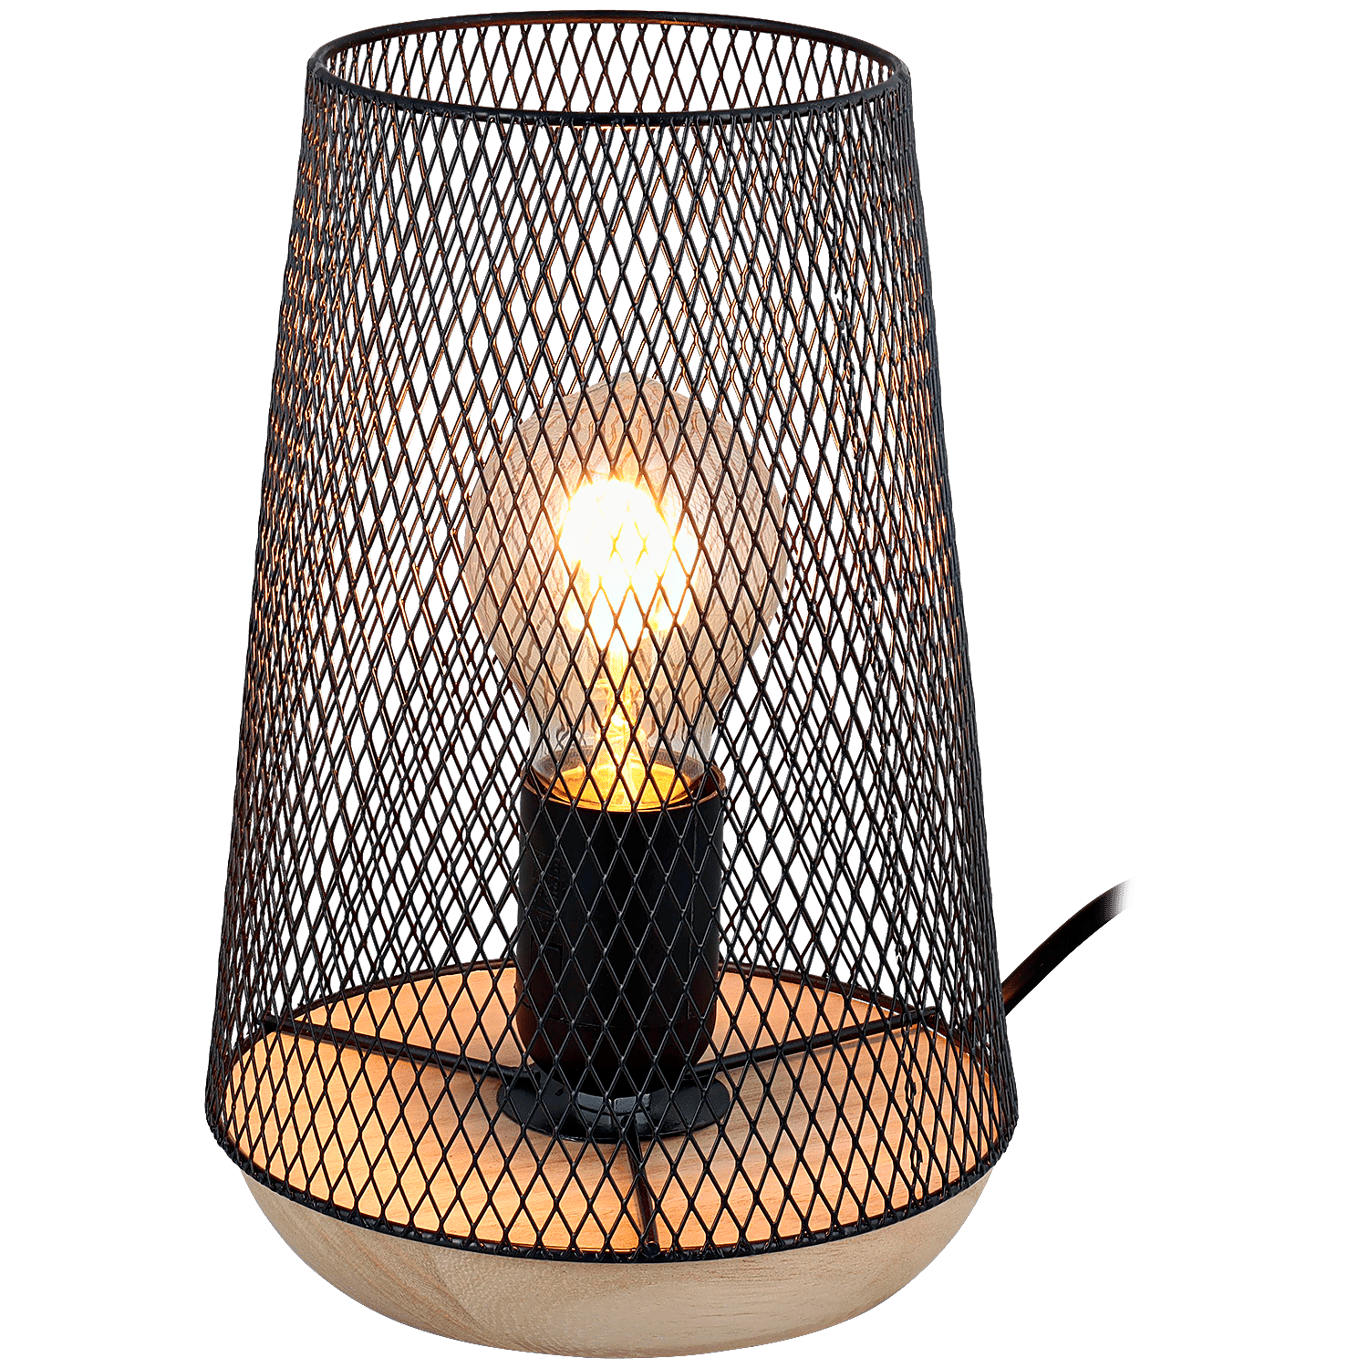 Lampen voor laagste prijs | Action.com